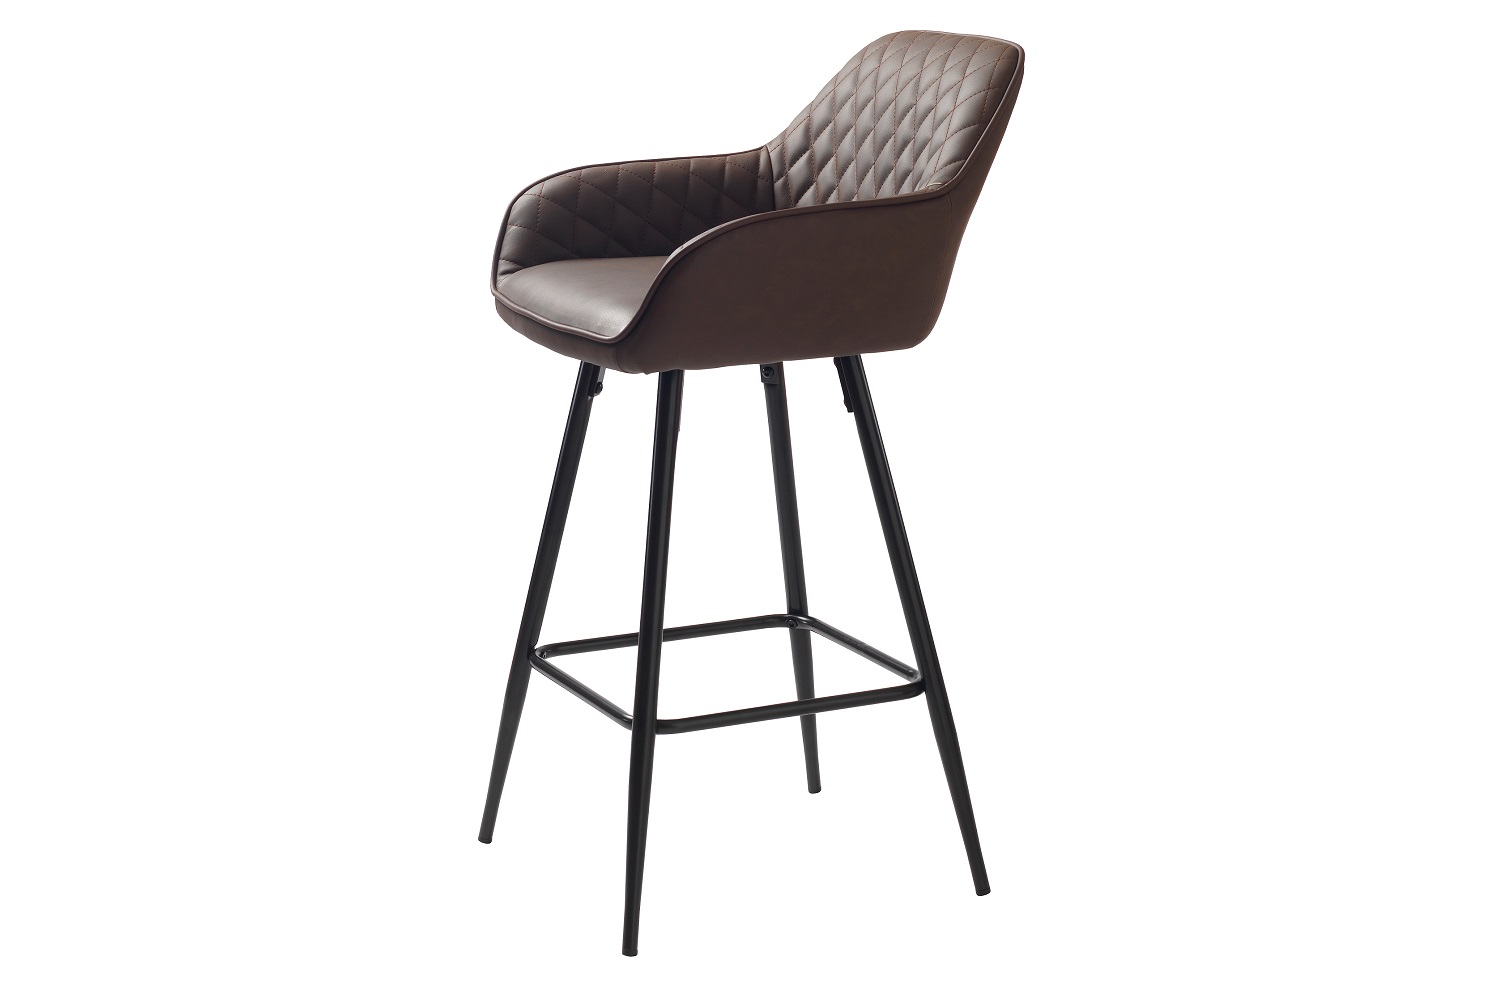 Furniria Designová barová židle Dana tmavě hnědá ekokůže